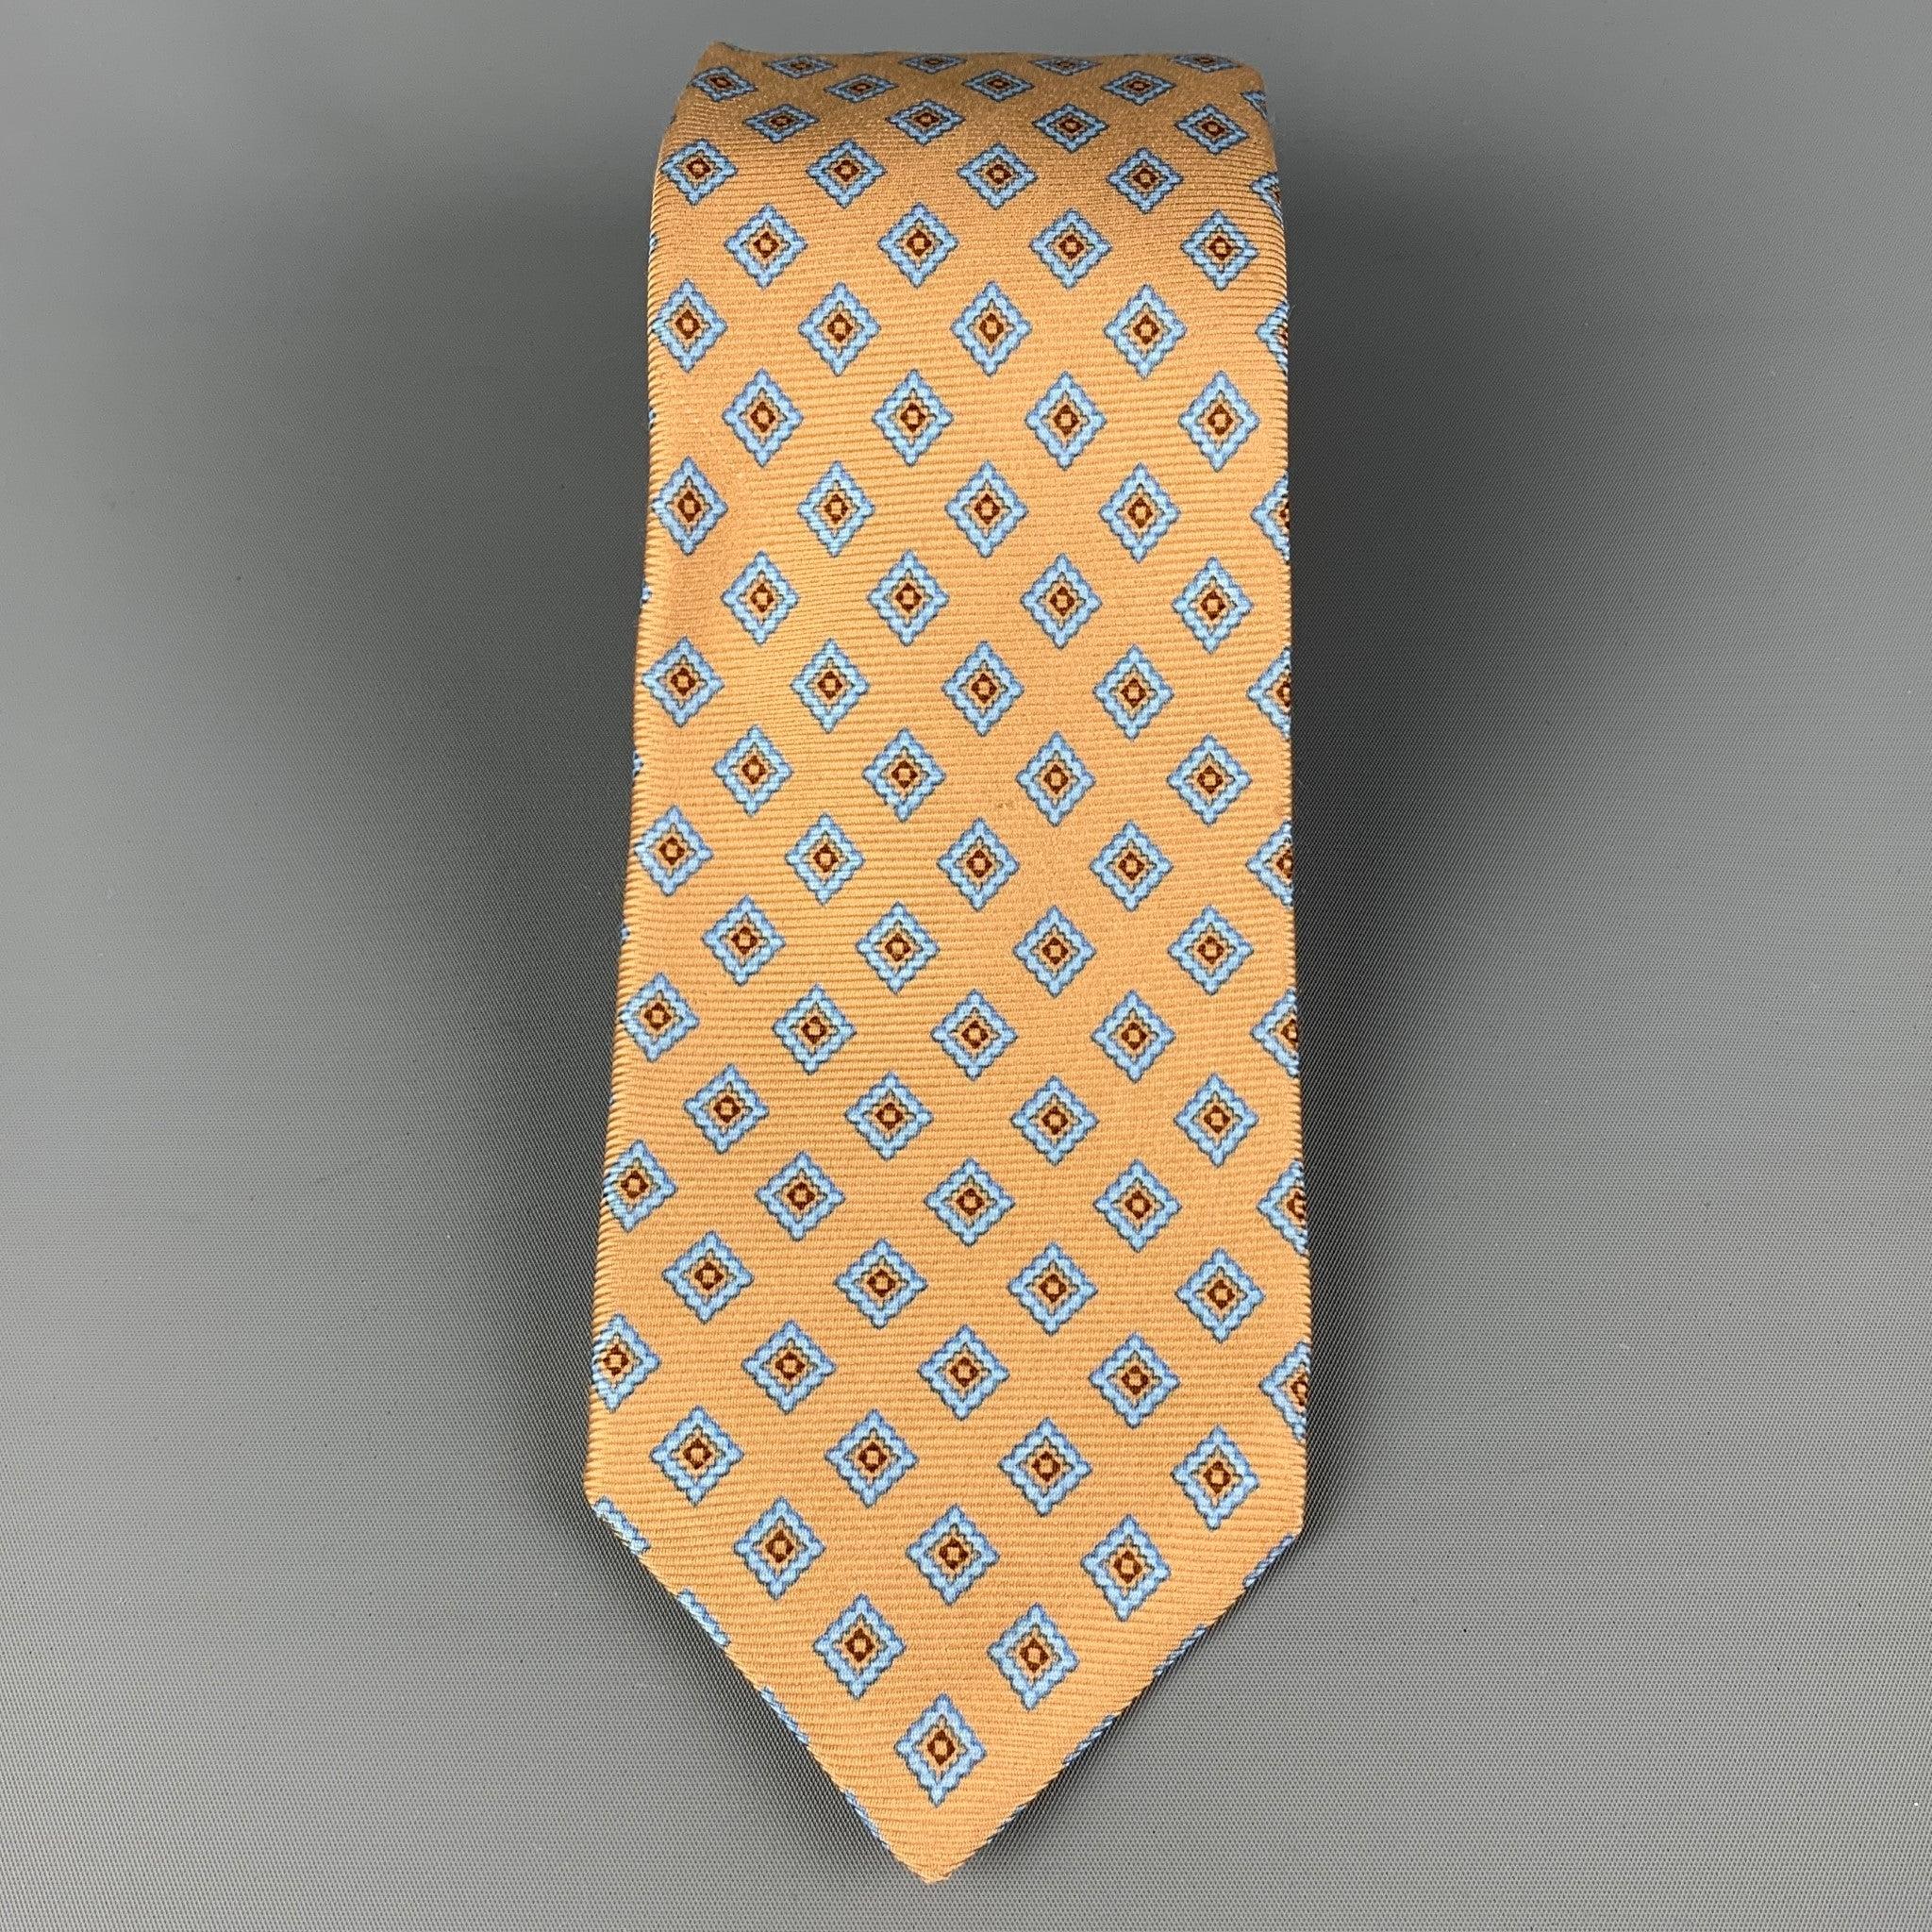 Die KITON Krawatte ist aus gelber und blauer Seide mit einem allover Rautenmuster. Hergestellt in Italien. Sehr guter, gebrauchter Zustand, Breite: 3.75 Zoll  Länge: 62 Zoll 


  
  
 
Referenz: 120381
Kategorie: Krawatte
Mehr Details
    
Marke: 